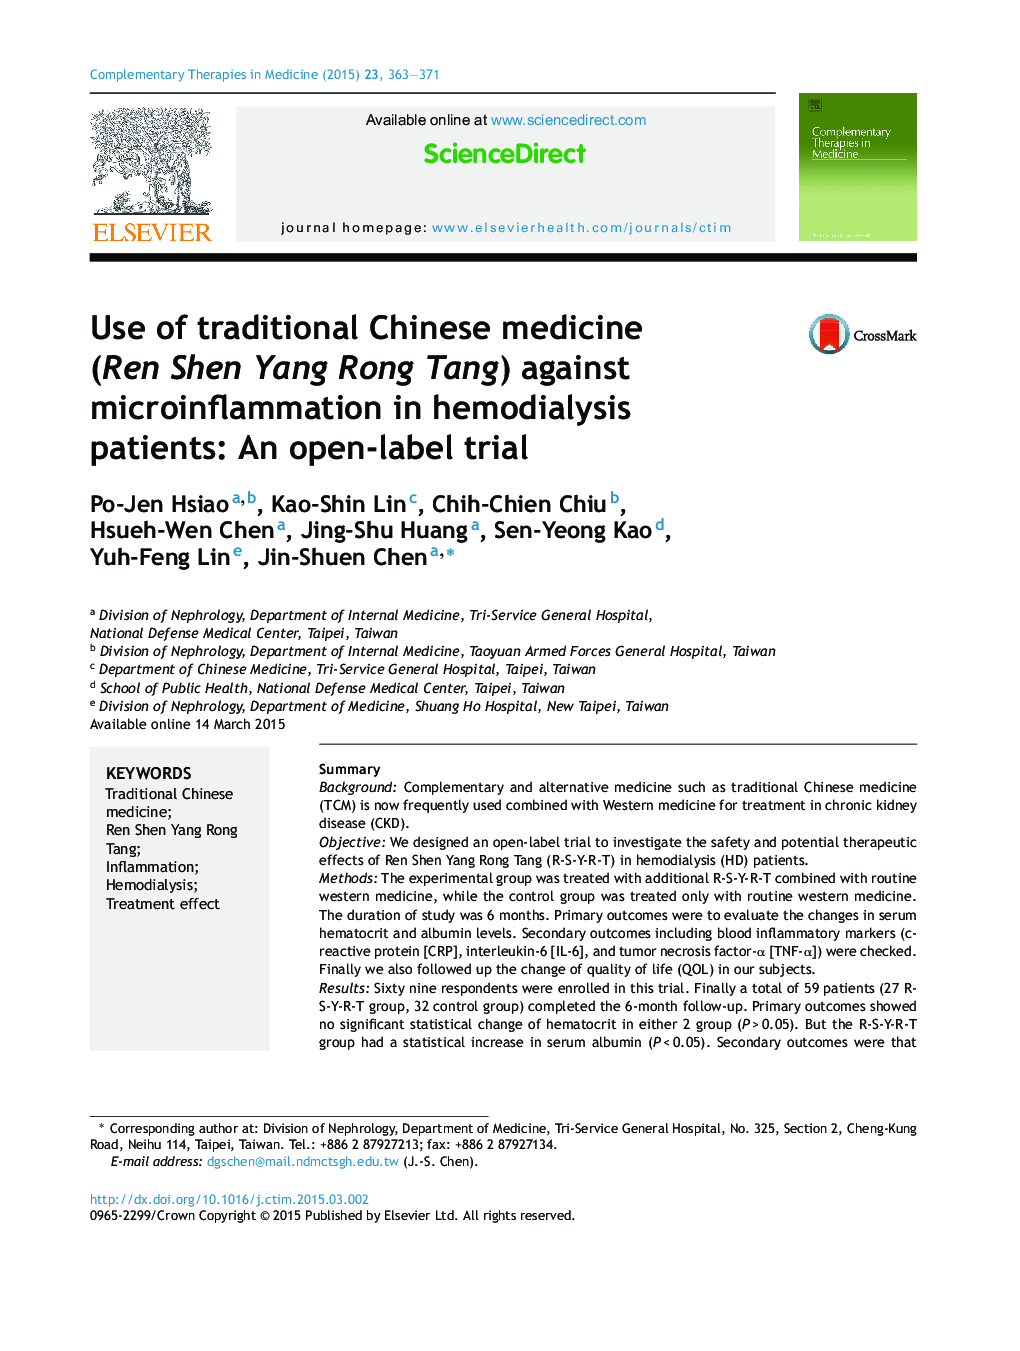 استفاده از طب سنتی چینی (Ren Shen Yang Rong Tang) در برابر بیماری های میکروبی در بیماران همودیالیز: یک آزمایش باز